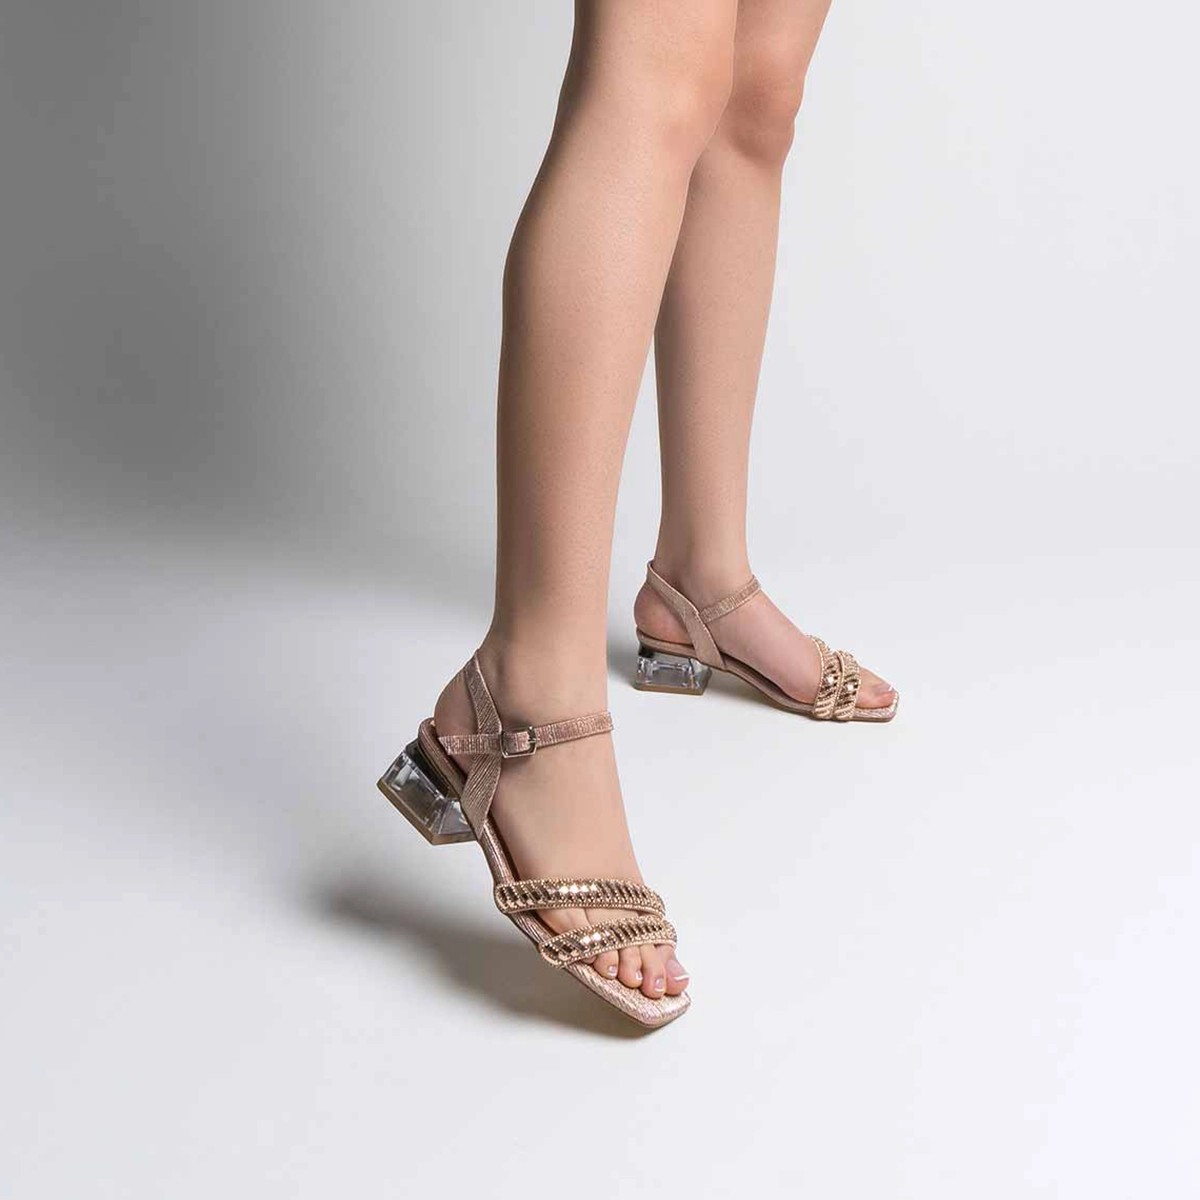 Tekstil Taşlı Kalın Kısa Topuklu Sandalet - Rose